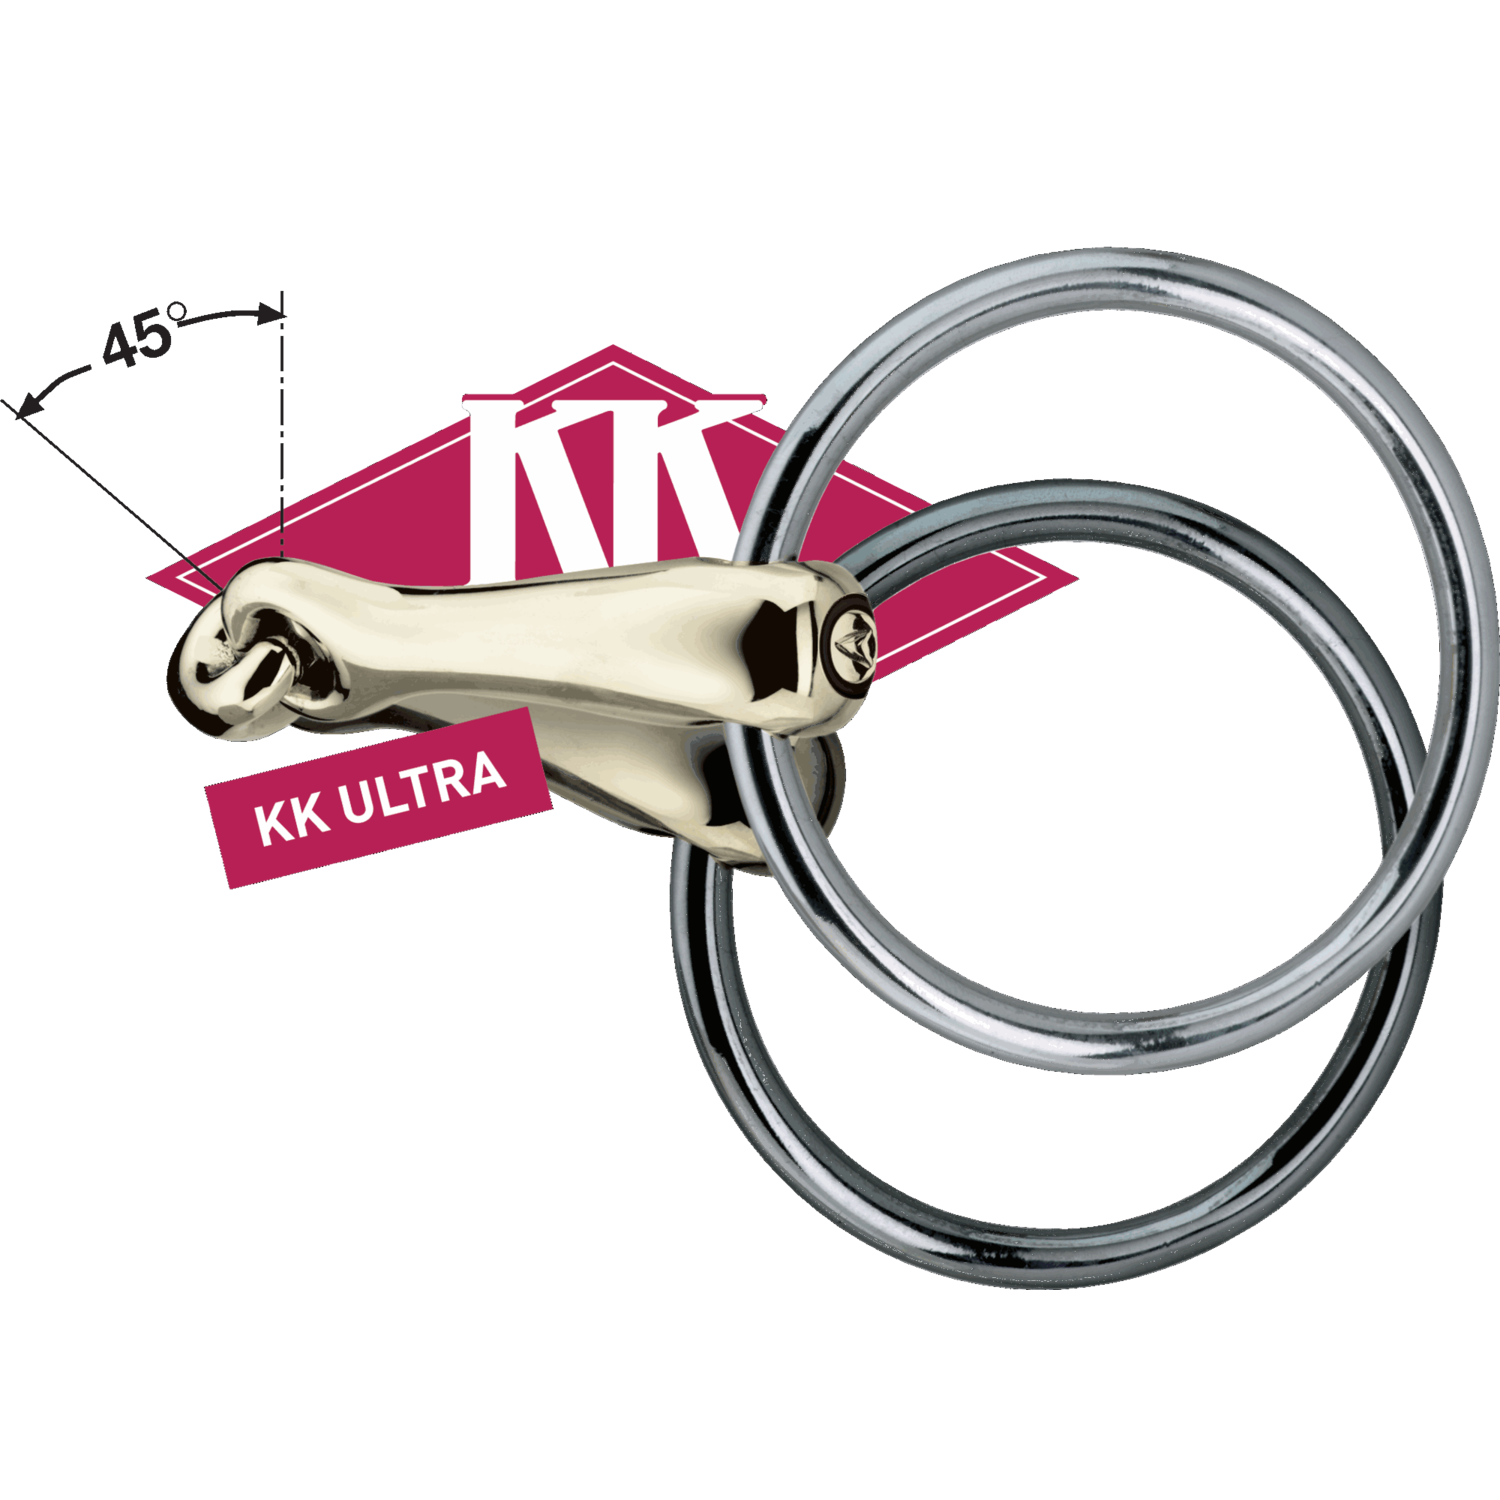 KK ULTRA Unterlegtrense 14 mm | Logo_KK_ULTRA_mit_45_Grad_Winkel_Sensogan.png | 1700896672